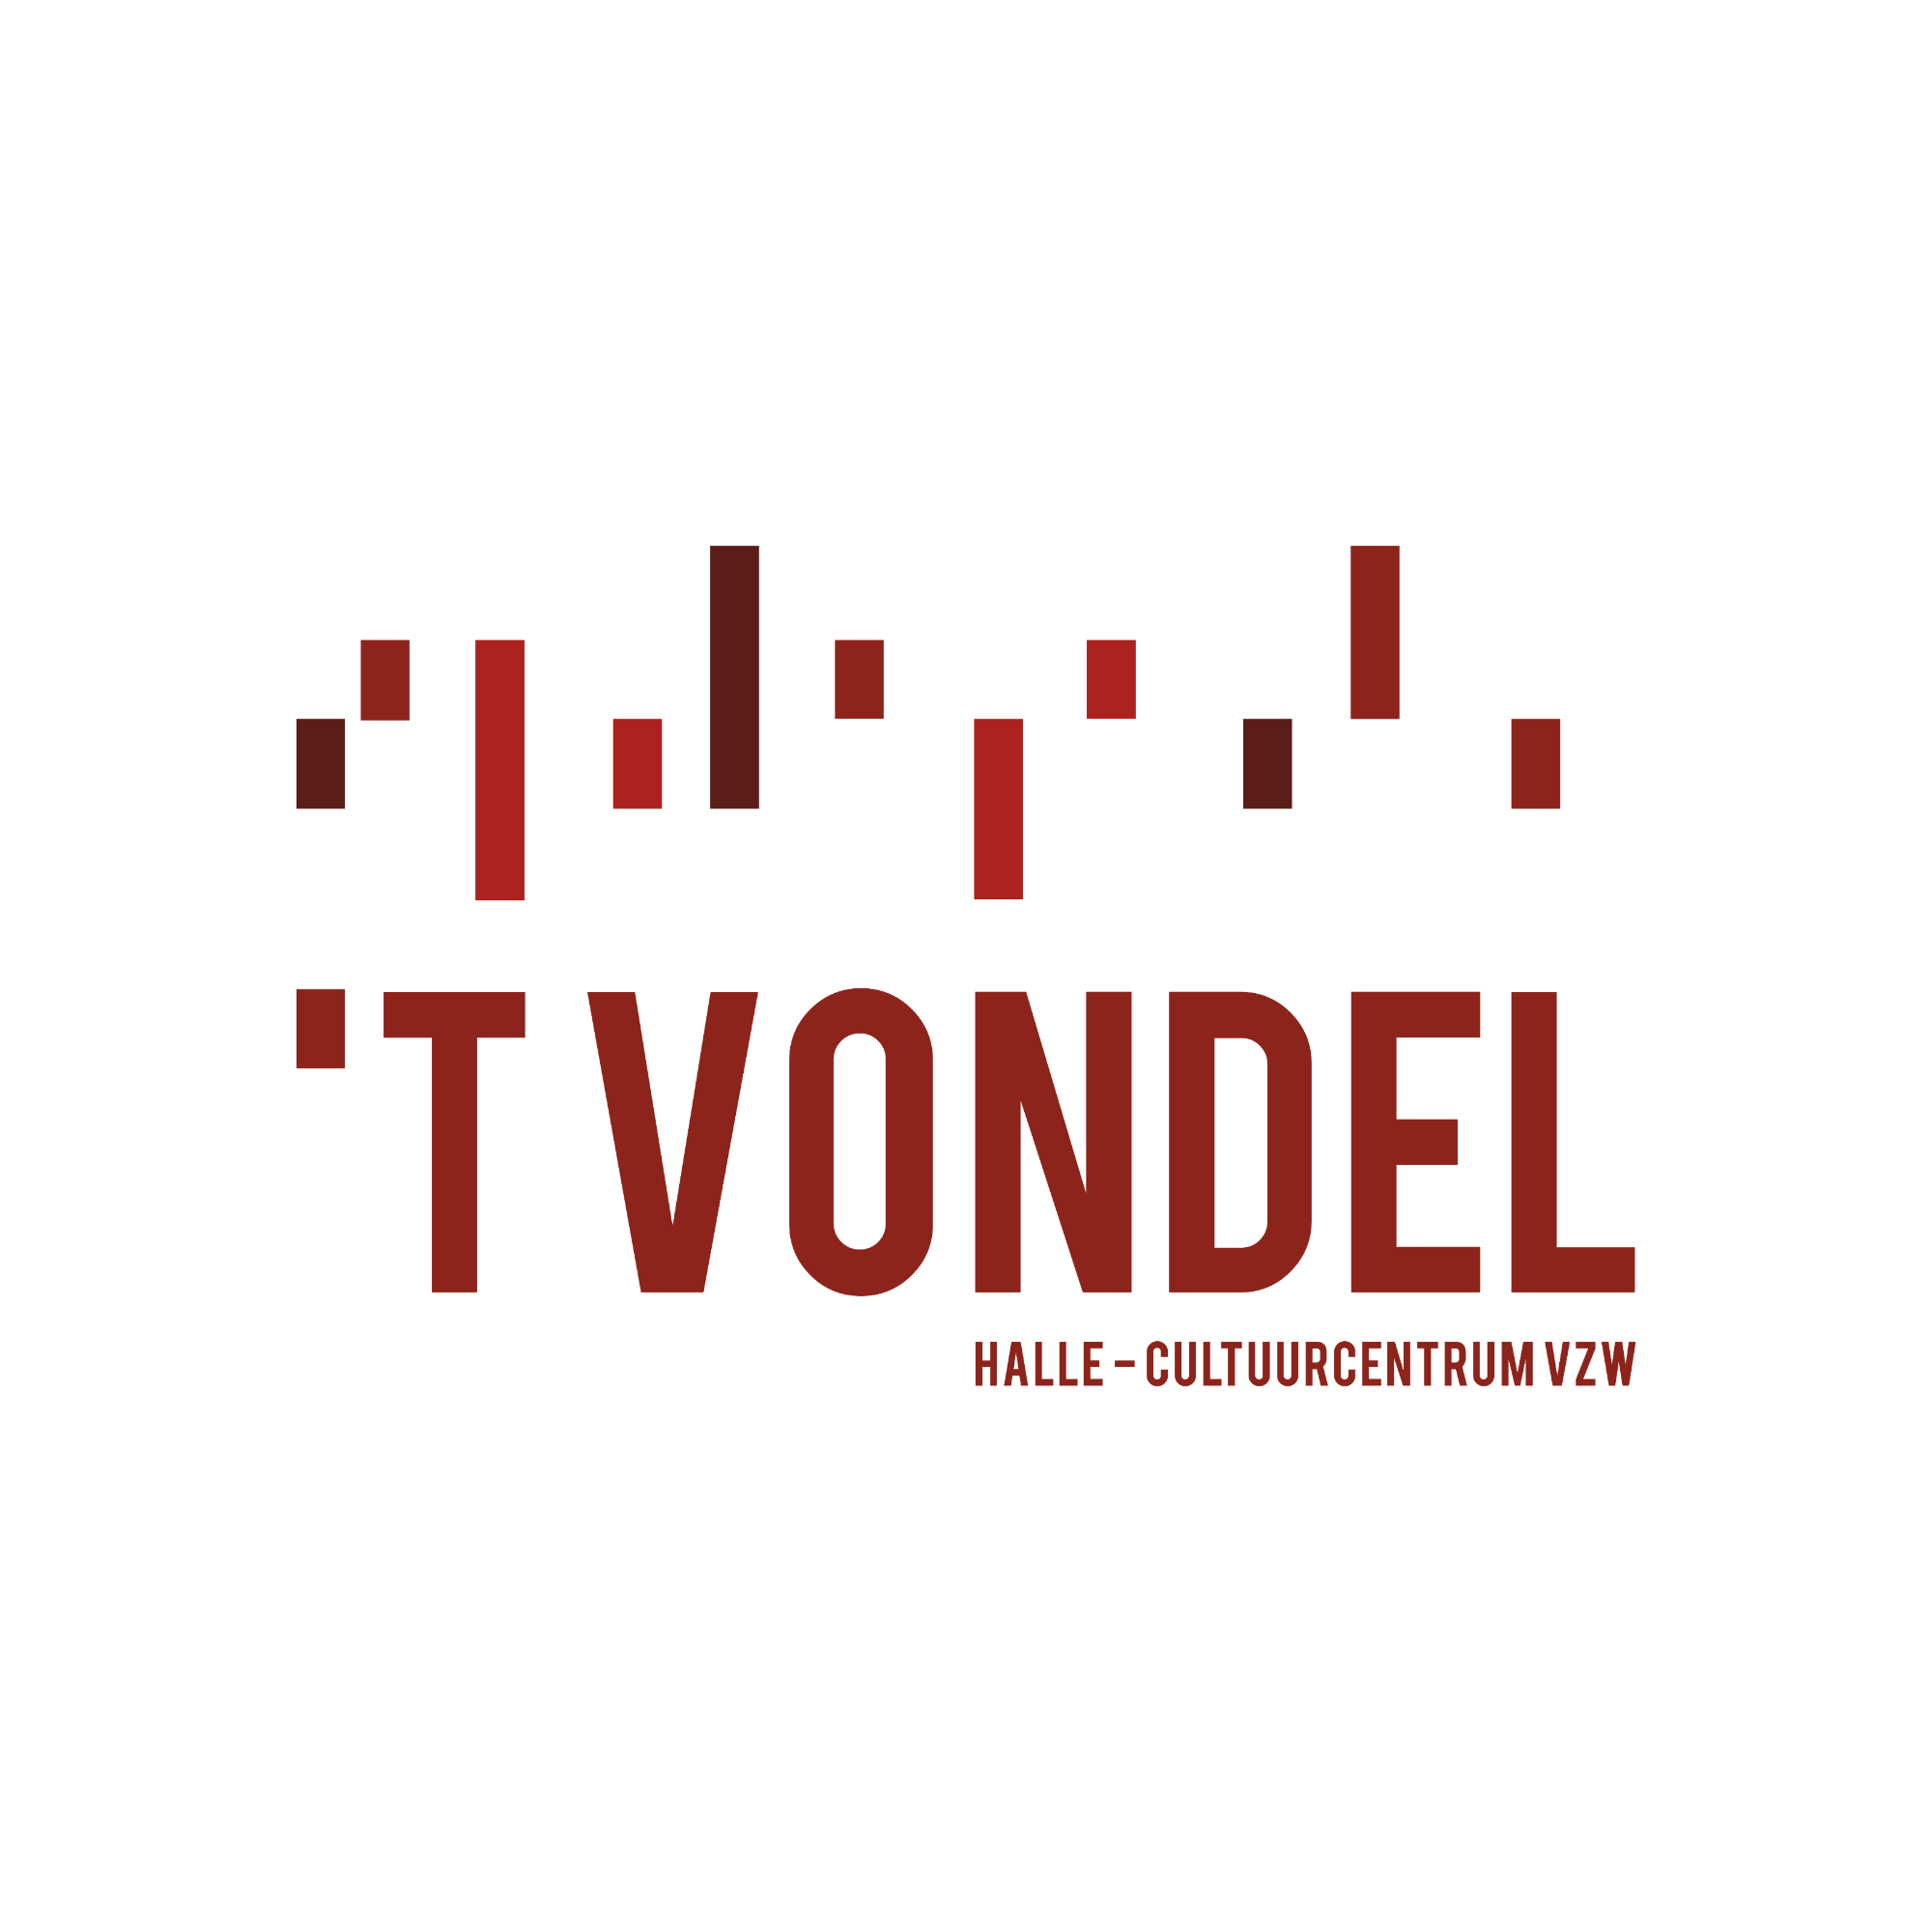 't Vondel